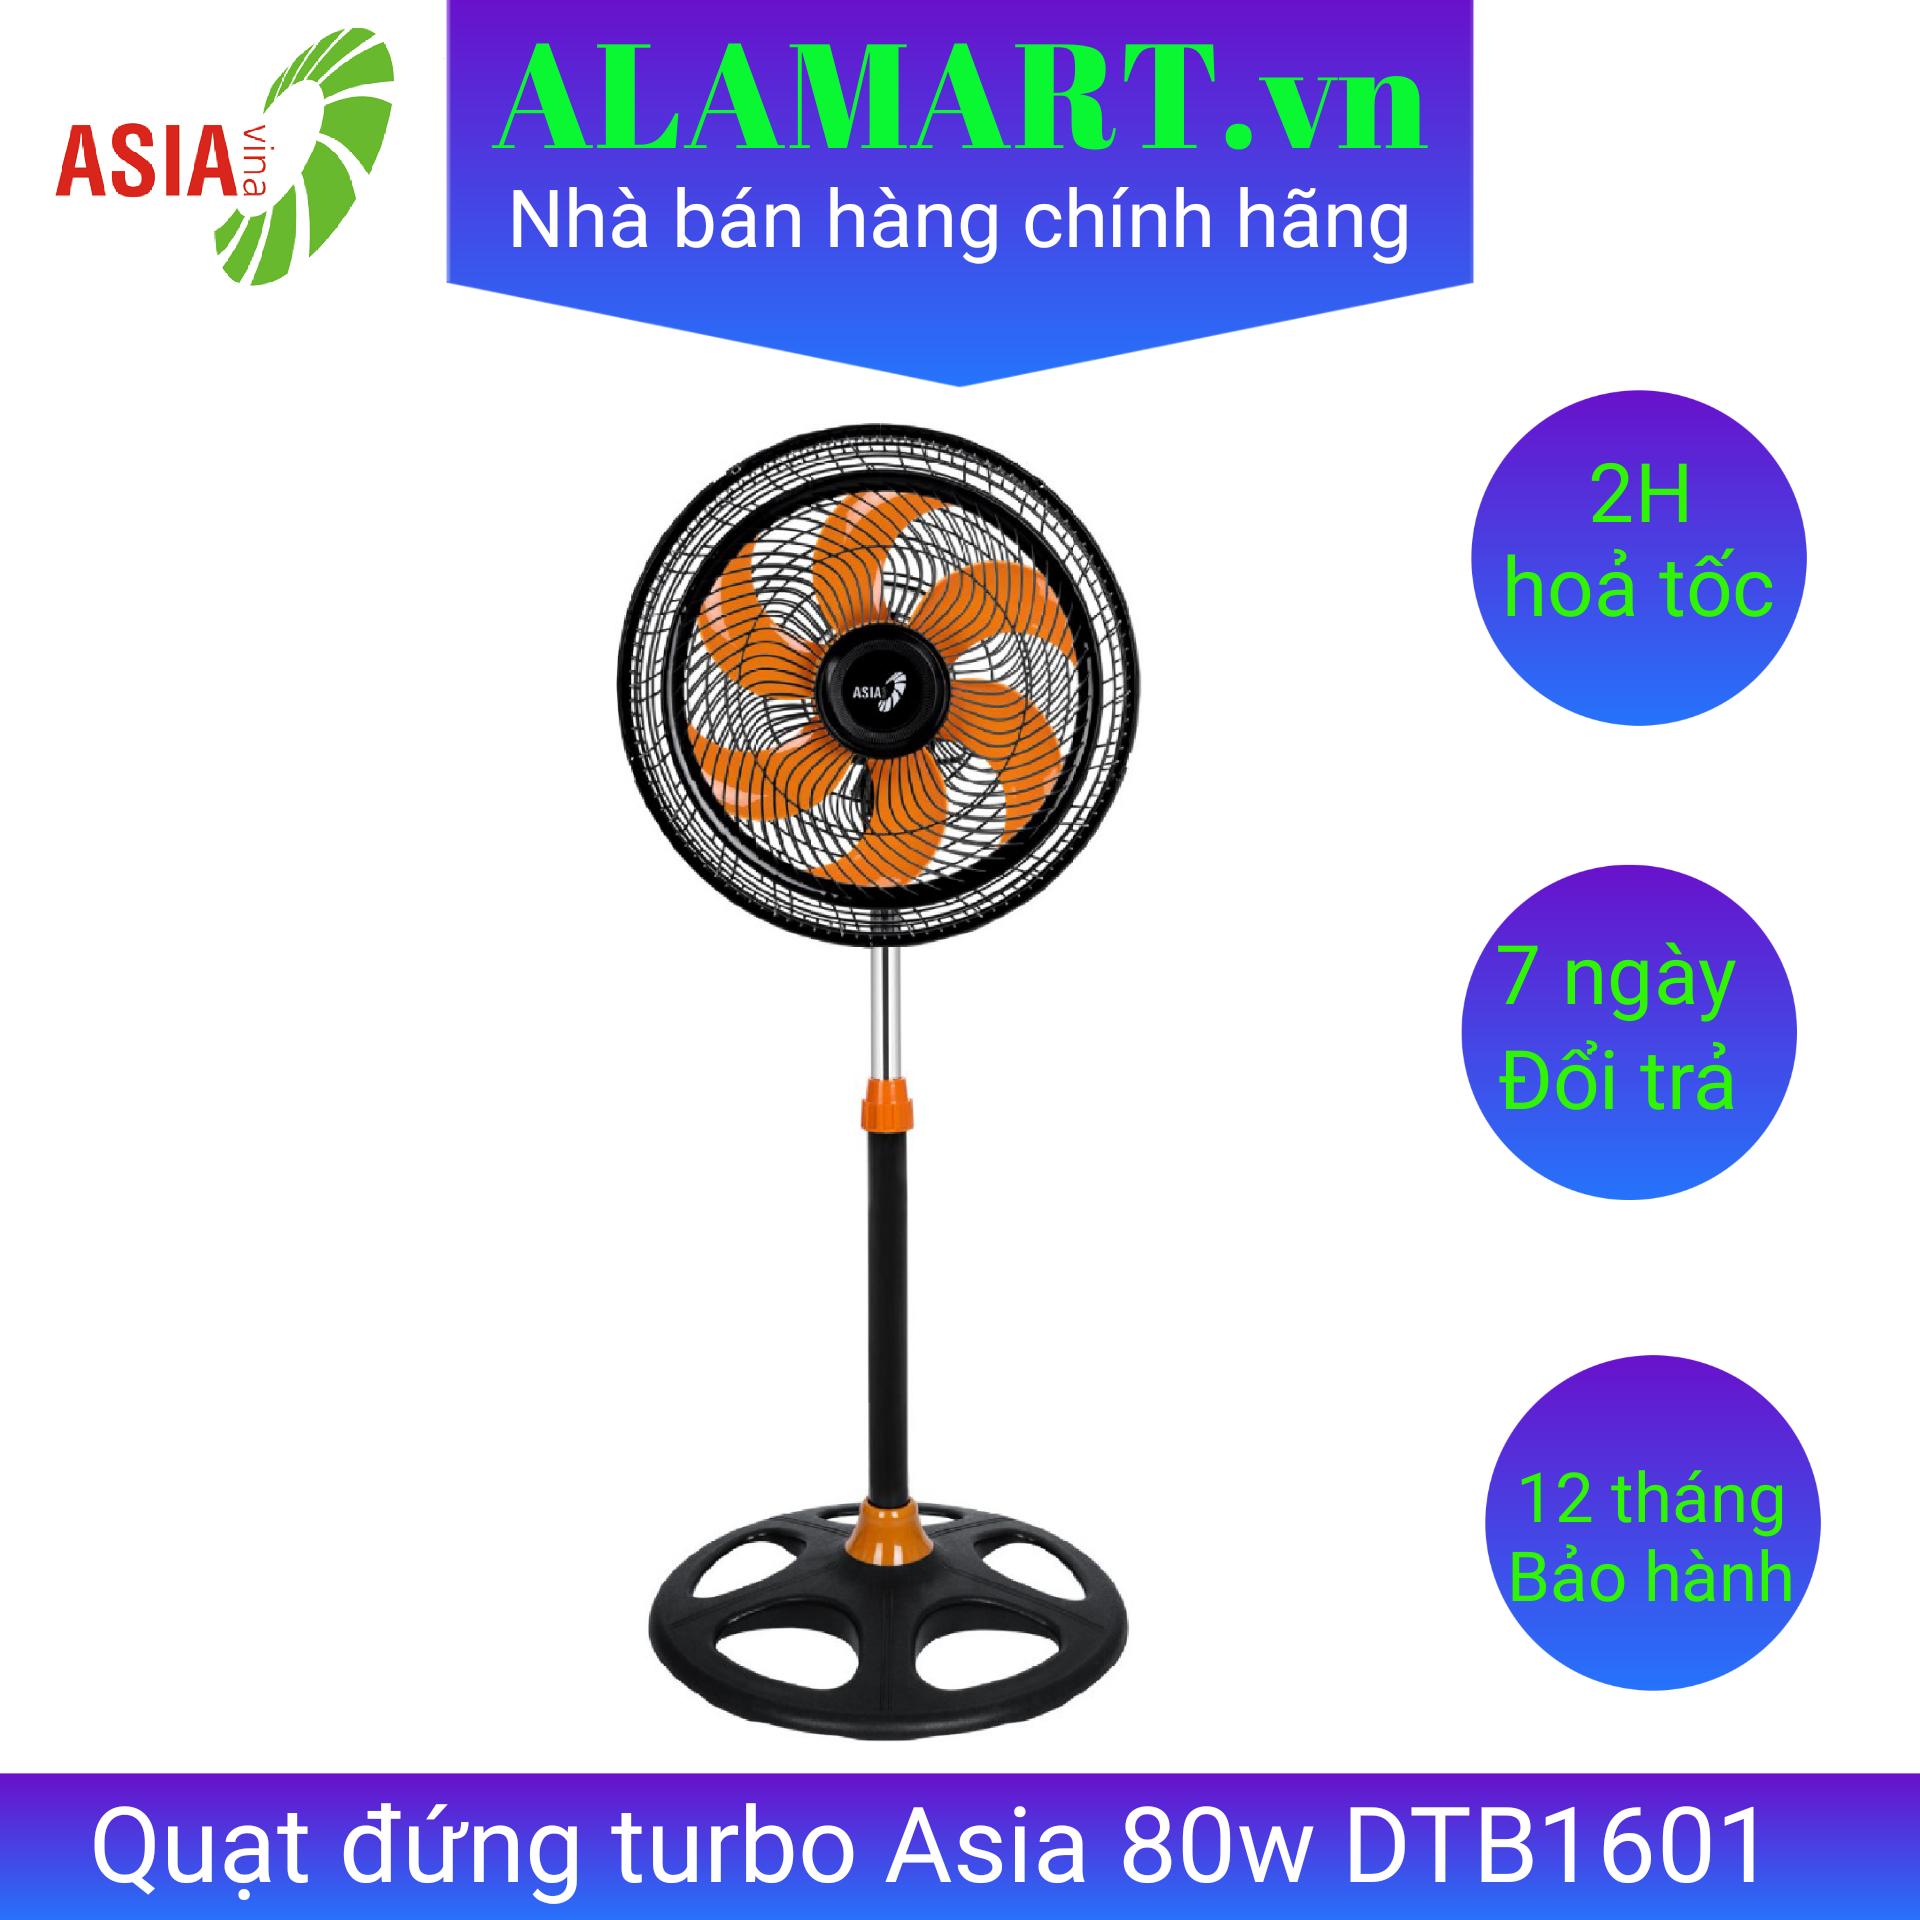 Quạt đứng turbo Asia DTB-1601 80w êm mát xa phù hợp không gian rộng